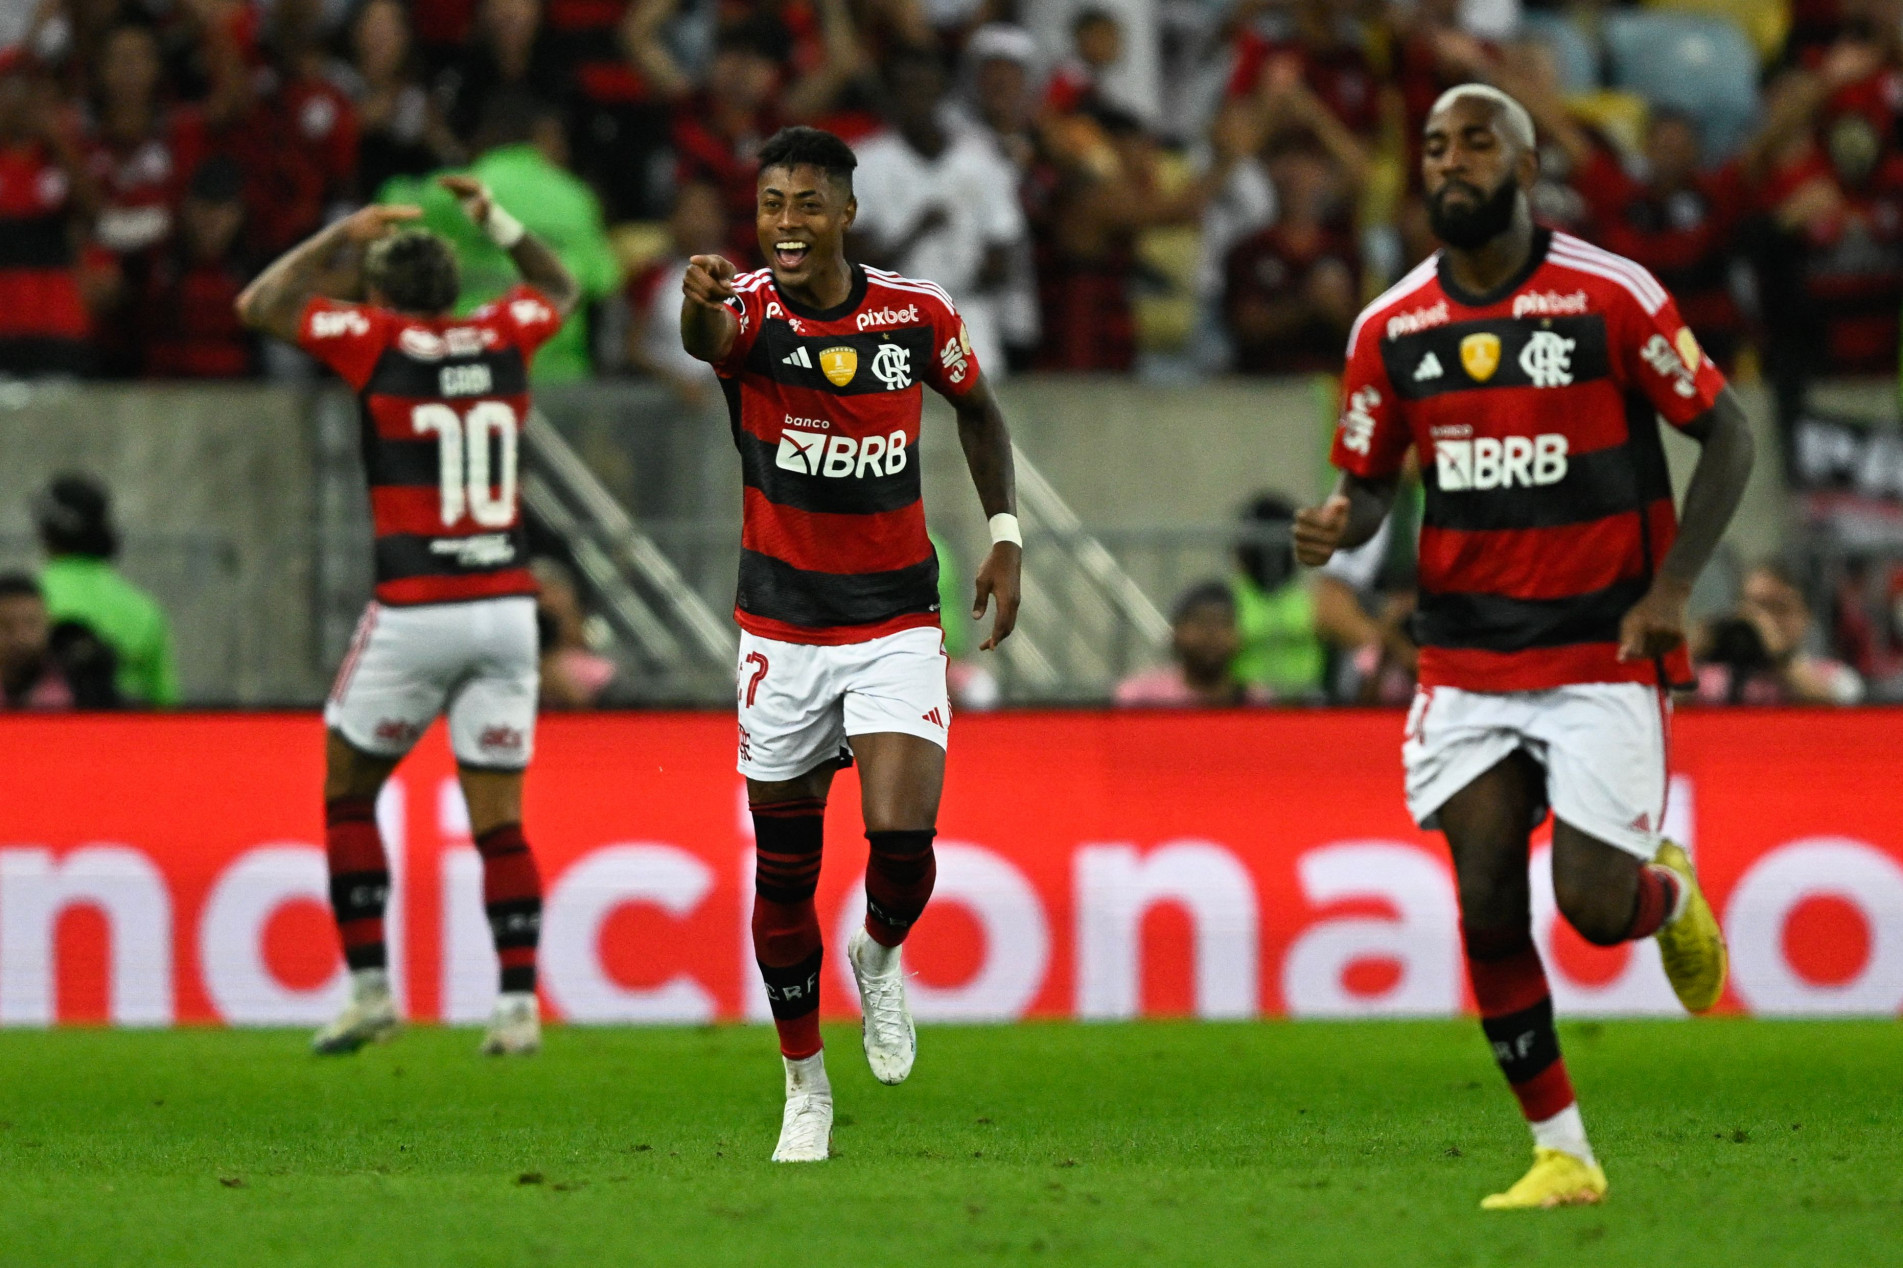 Lista de melhores clubes do Brasil em 2023: Flamengo é o 4º… até